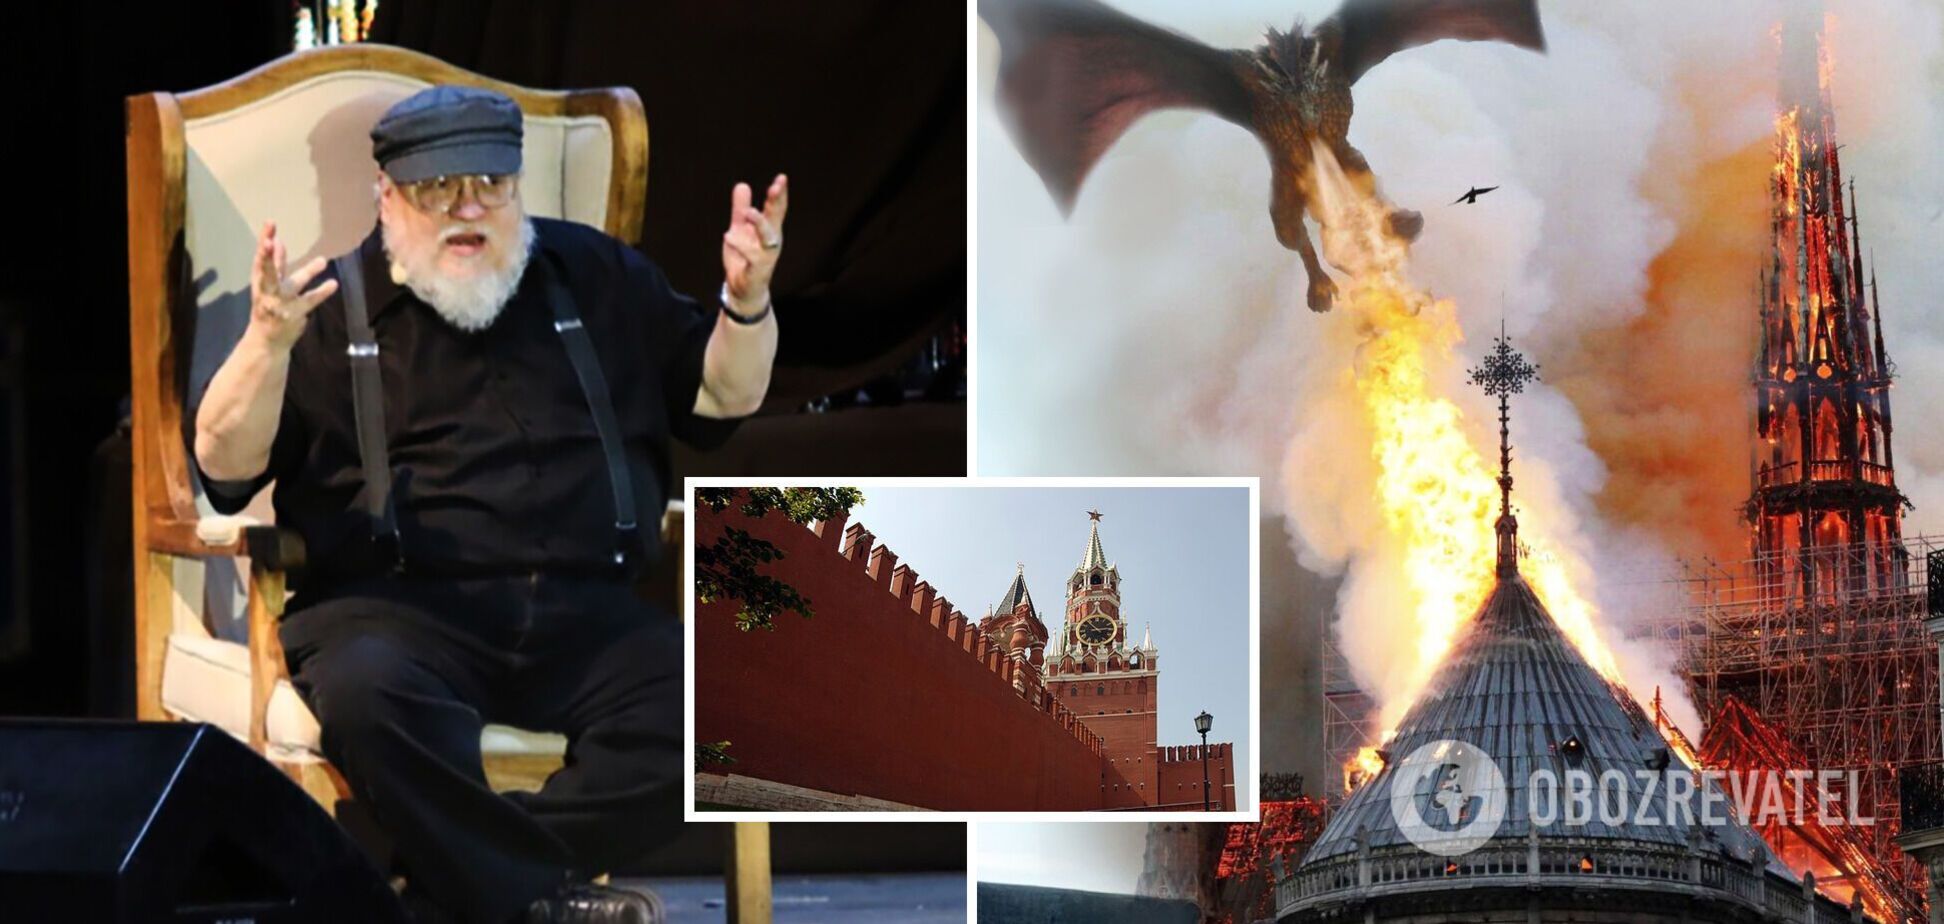 Автор 'Игры престолов' Джордж Мартин заявил, что хотел бы сжечь Кремль одним из драконов, на фоне ядерного шантажа РФ